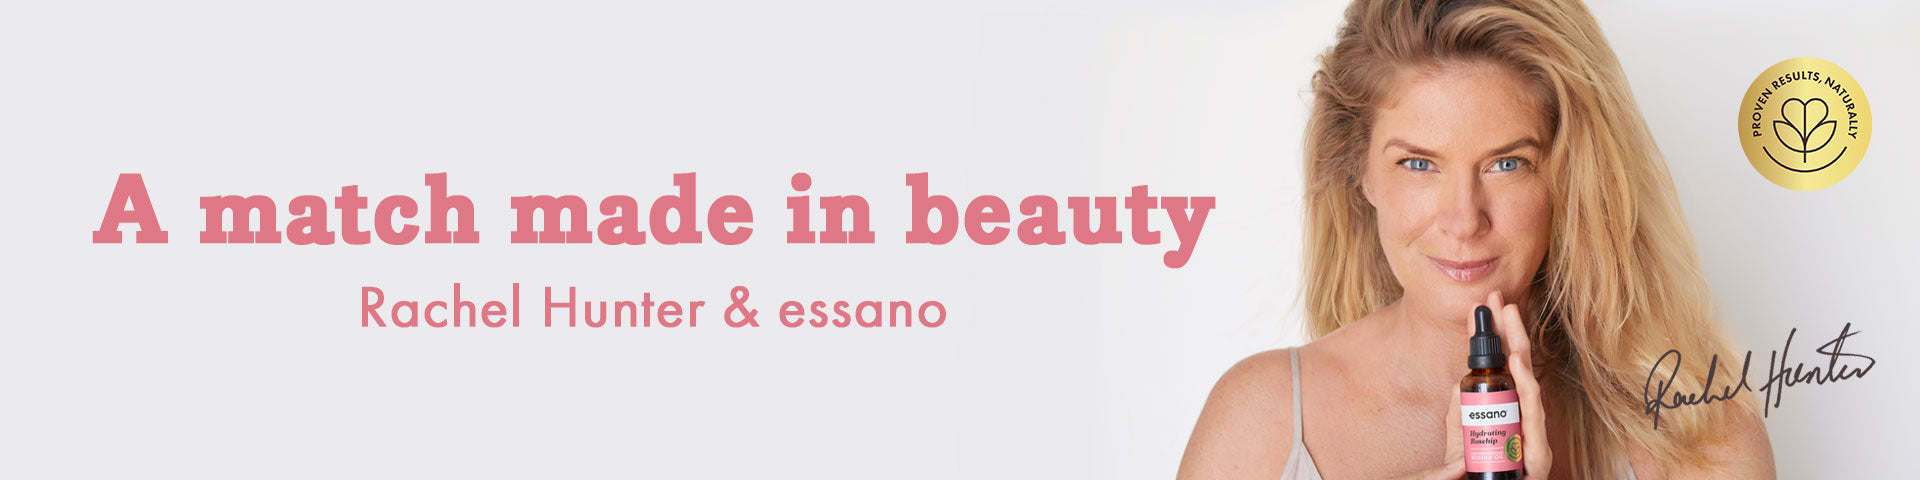 A match made in beauty – Rachel Hunter & essano